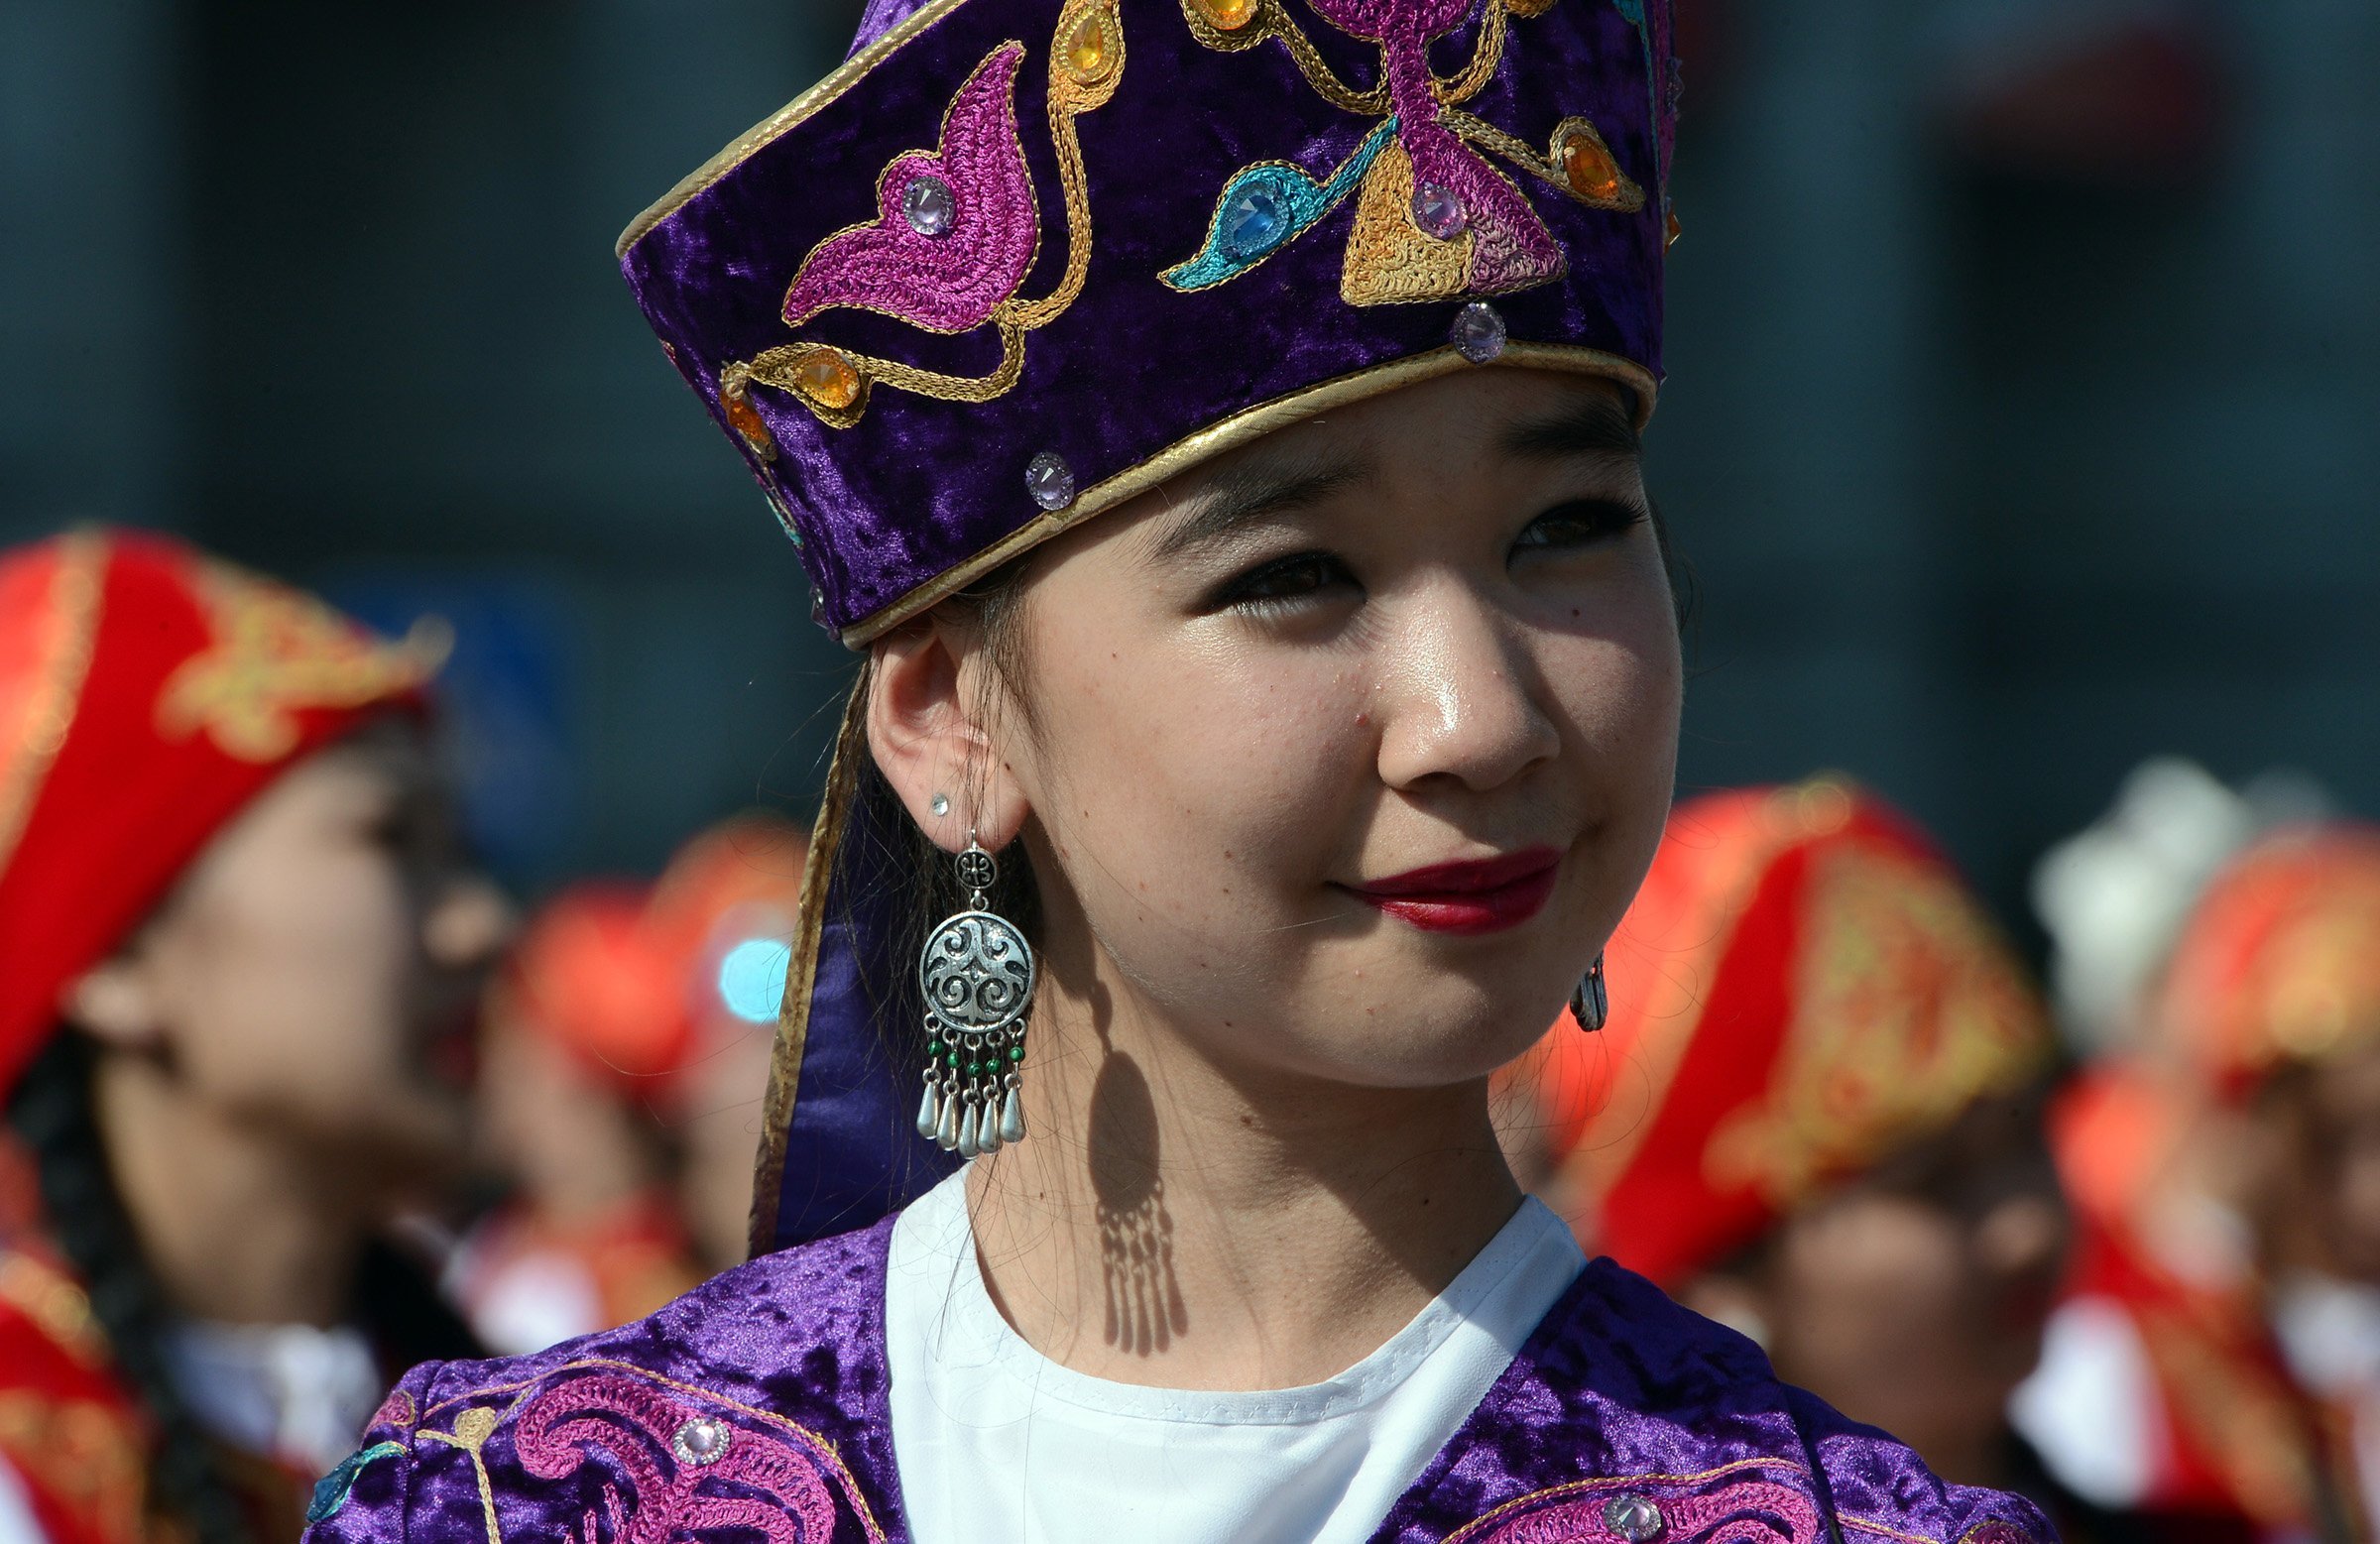 Сайт киргизов. Нац головной убор Киргизии. Кыргызстан. Нац. Головной убор Элечек.. Киргизы кайсакиr. Головной убор киргизов женский.